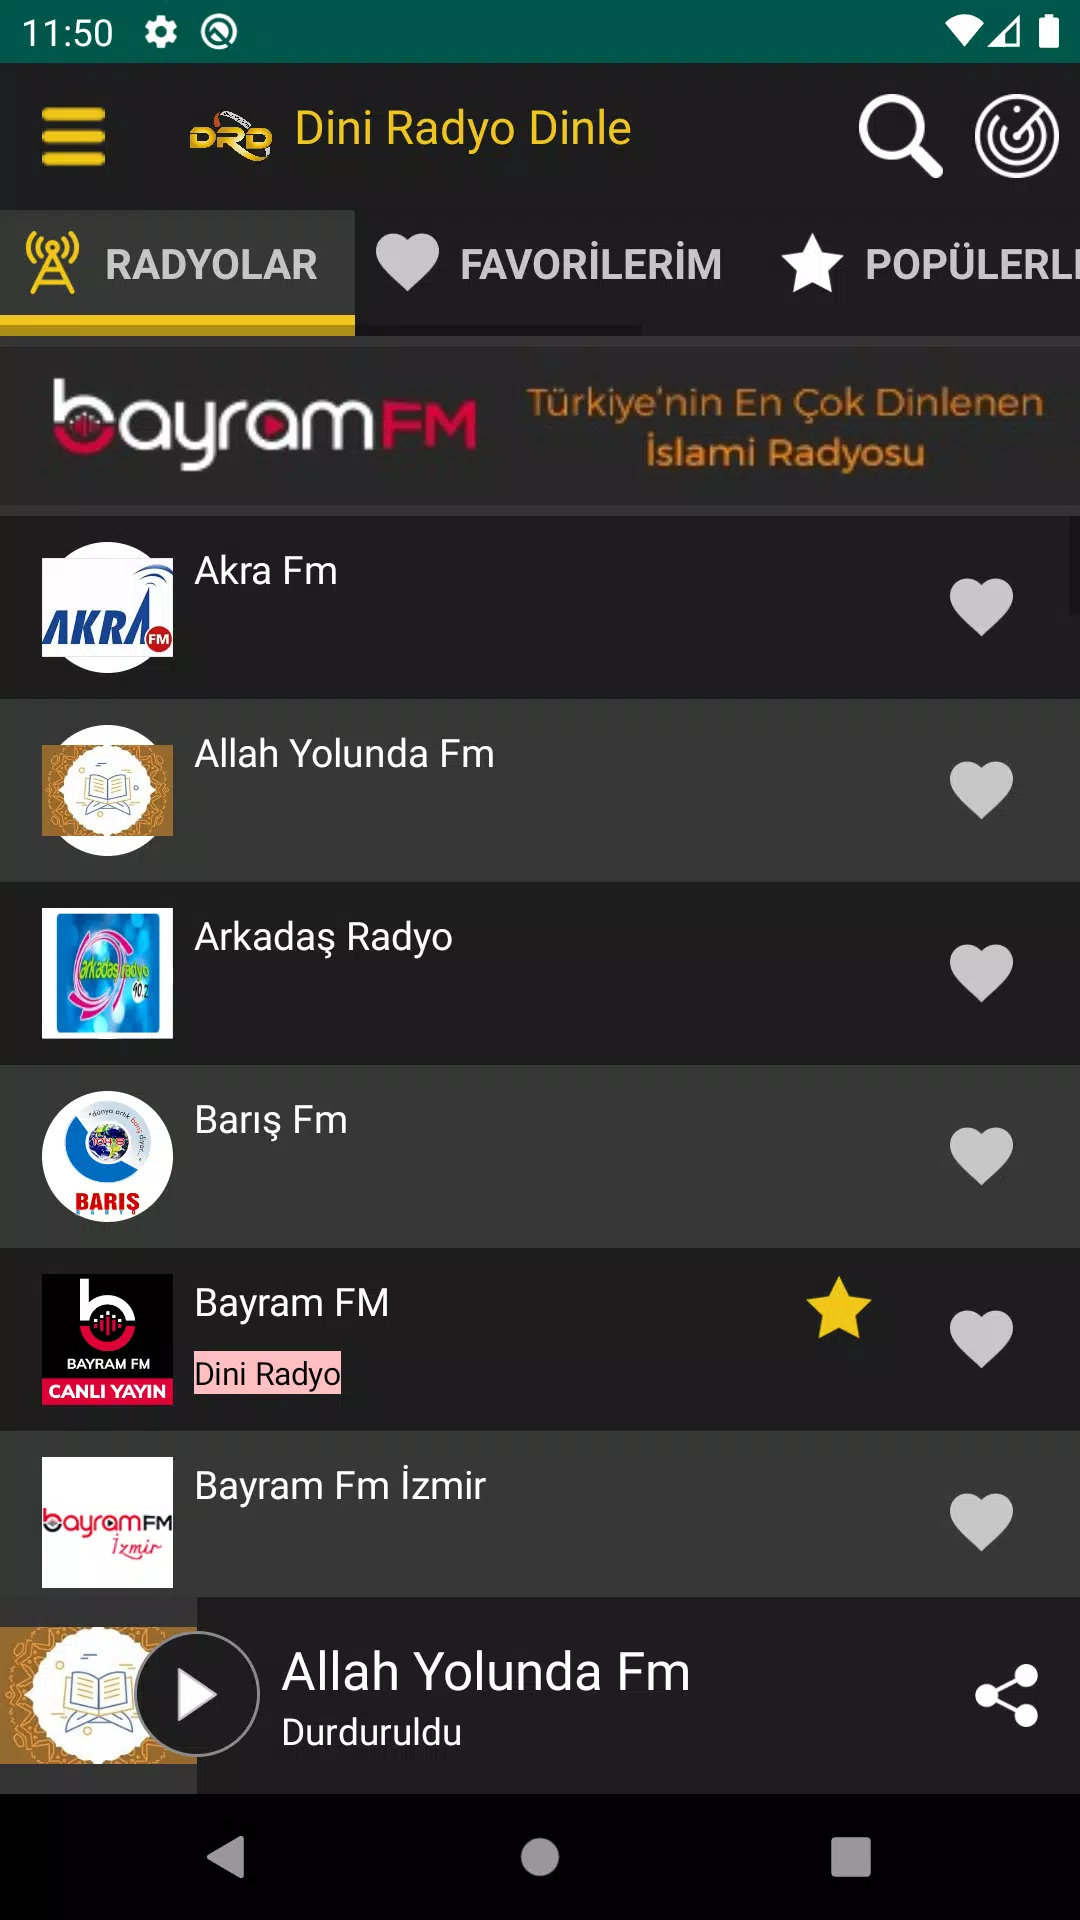 Dini Radyo Dinle - Radyolar Canlı yayını DRD APK für Android herunterladen